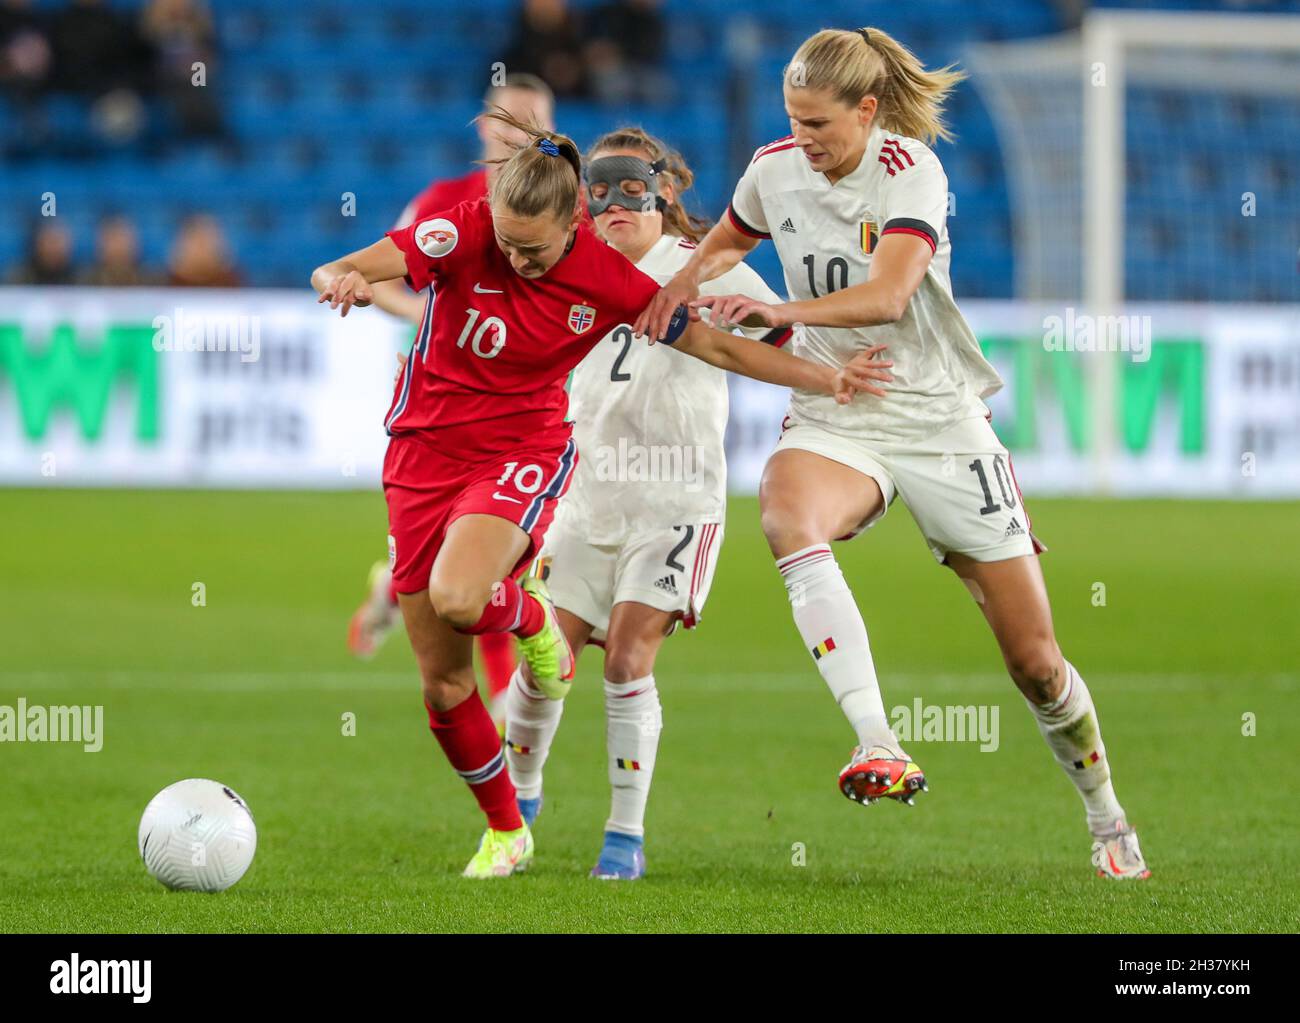 Oslo, Noruega. 26th Oct, 2021. Estadio Ullevaal Caroline Graham Hansen (10)  de Noruega y Justine Vanhaevermaet (10) de Bélgica luchan por el balón  durante un partido de fútbol femenino entre los equipos